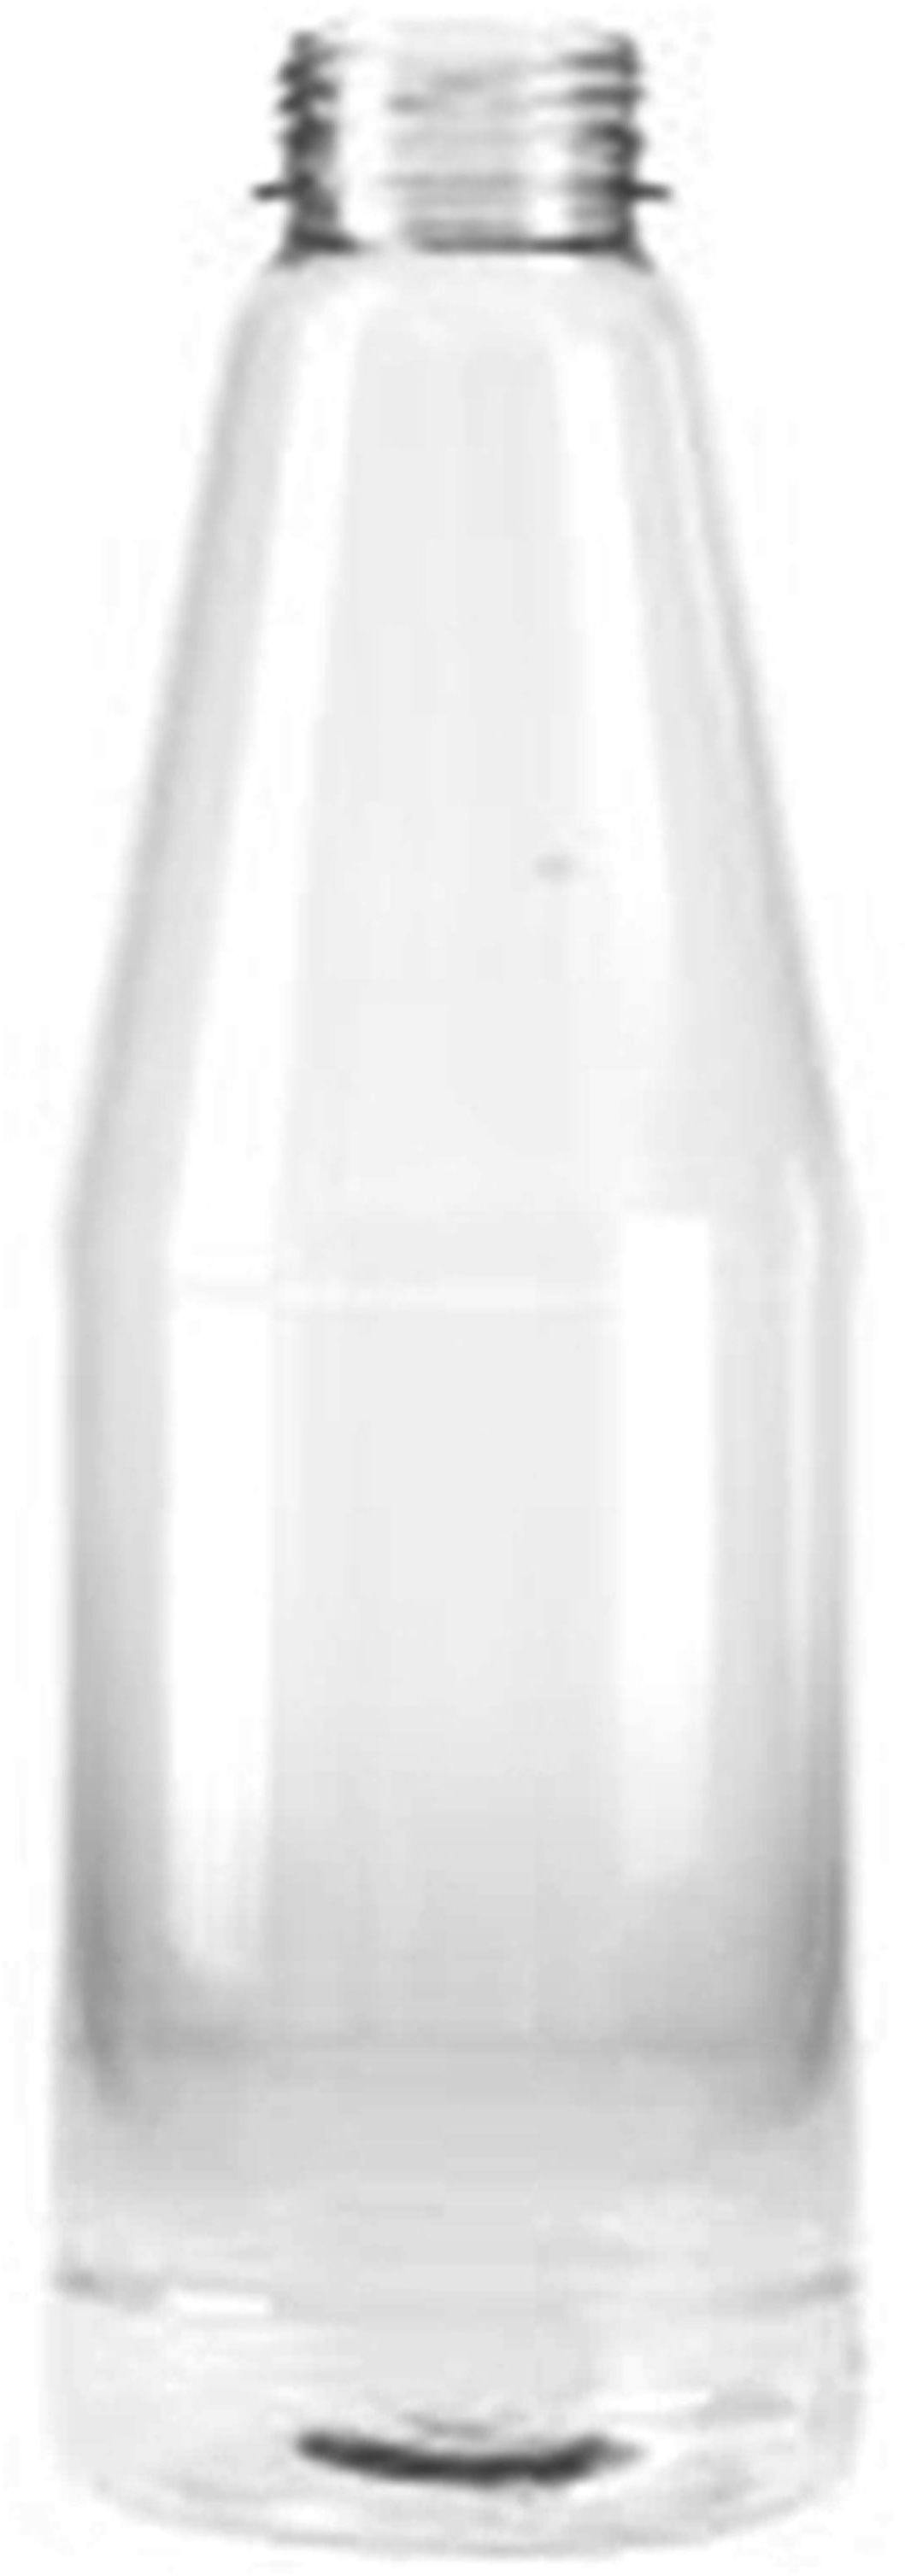 Bottle PET 1 liter Transparent juice d38